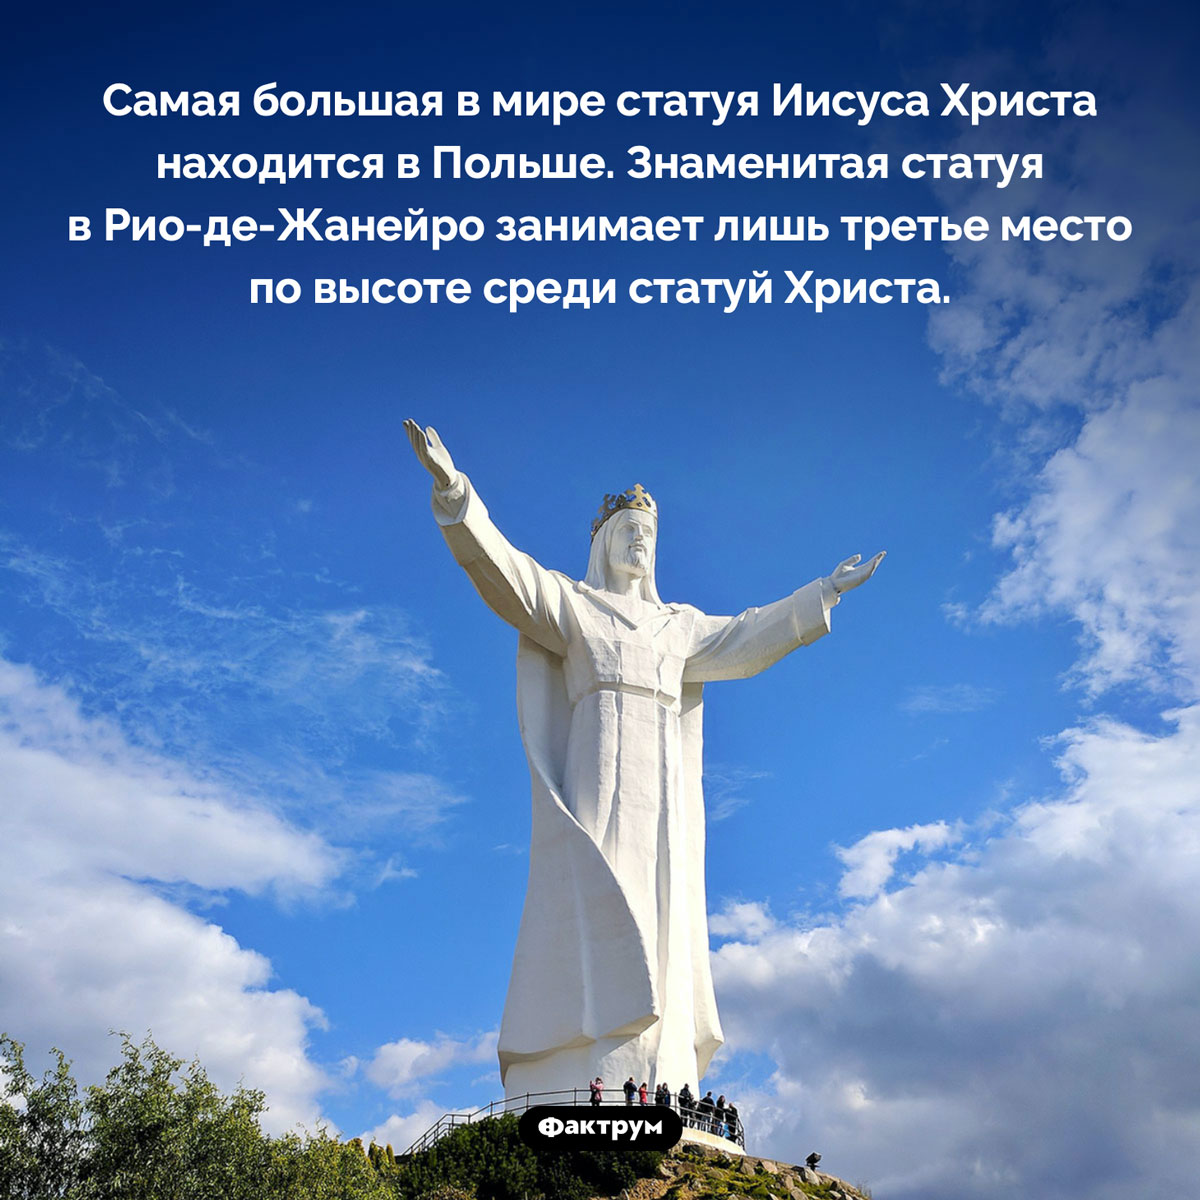 Самая большая статуя Иисуса Христа. Самая большая в мире статуя Иисуса Христа находится в Польше. Знаменитая статуя в Рио-де-Жанейро занимает лишь третье место по высоте среди статуй Христа.